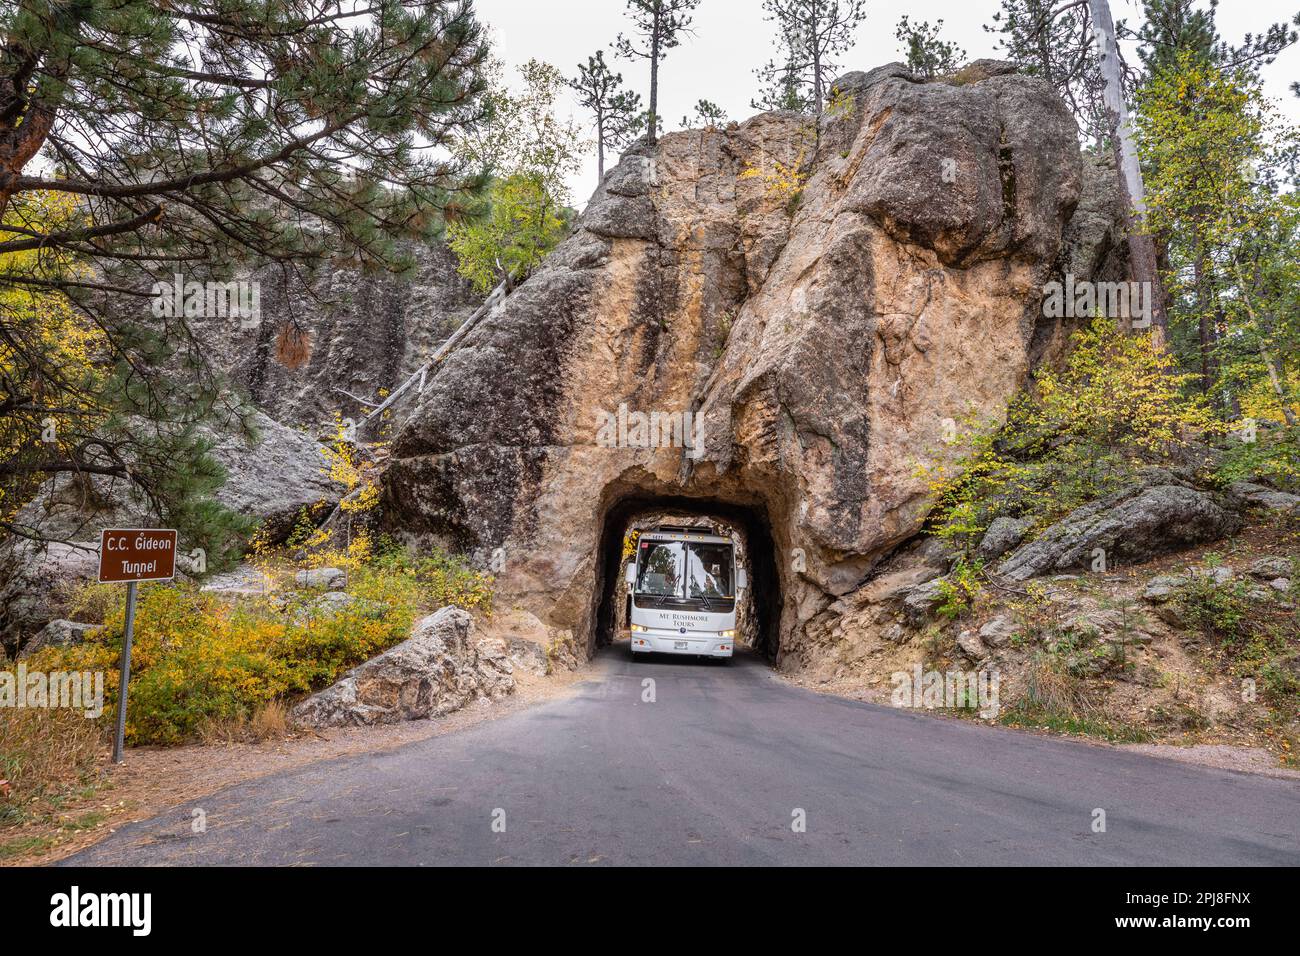 Doane Robinson Tunnel lungo la Scenic Iron Mountain Road tra Mount Rushmore e Custer state Park, South Dakota, Stati Uniti d'America Foto Stock